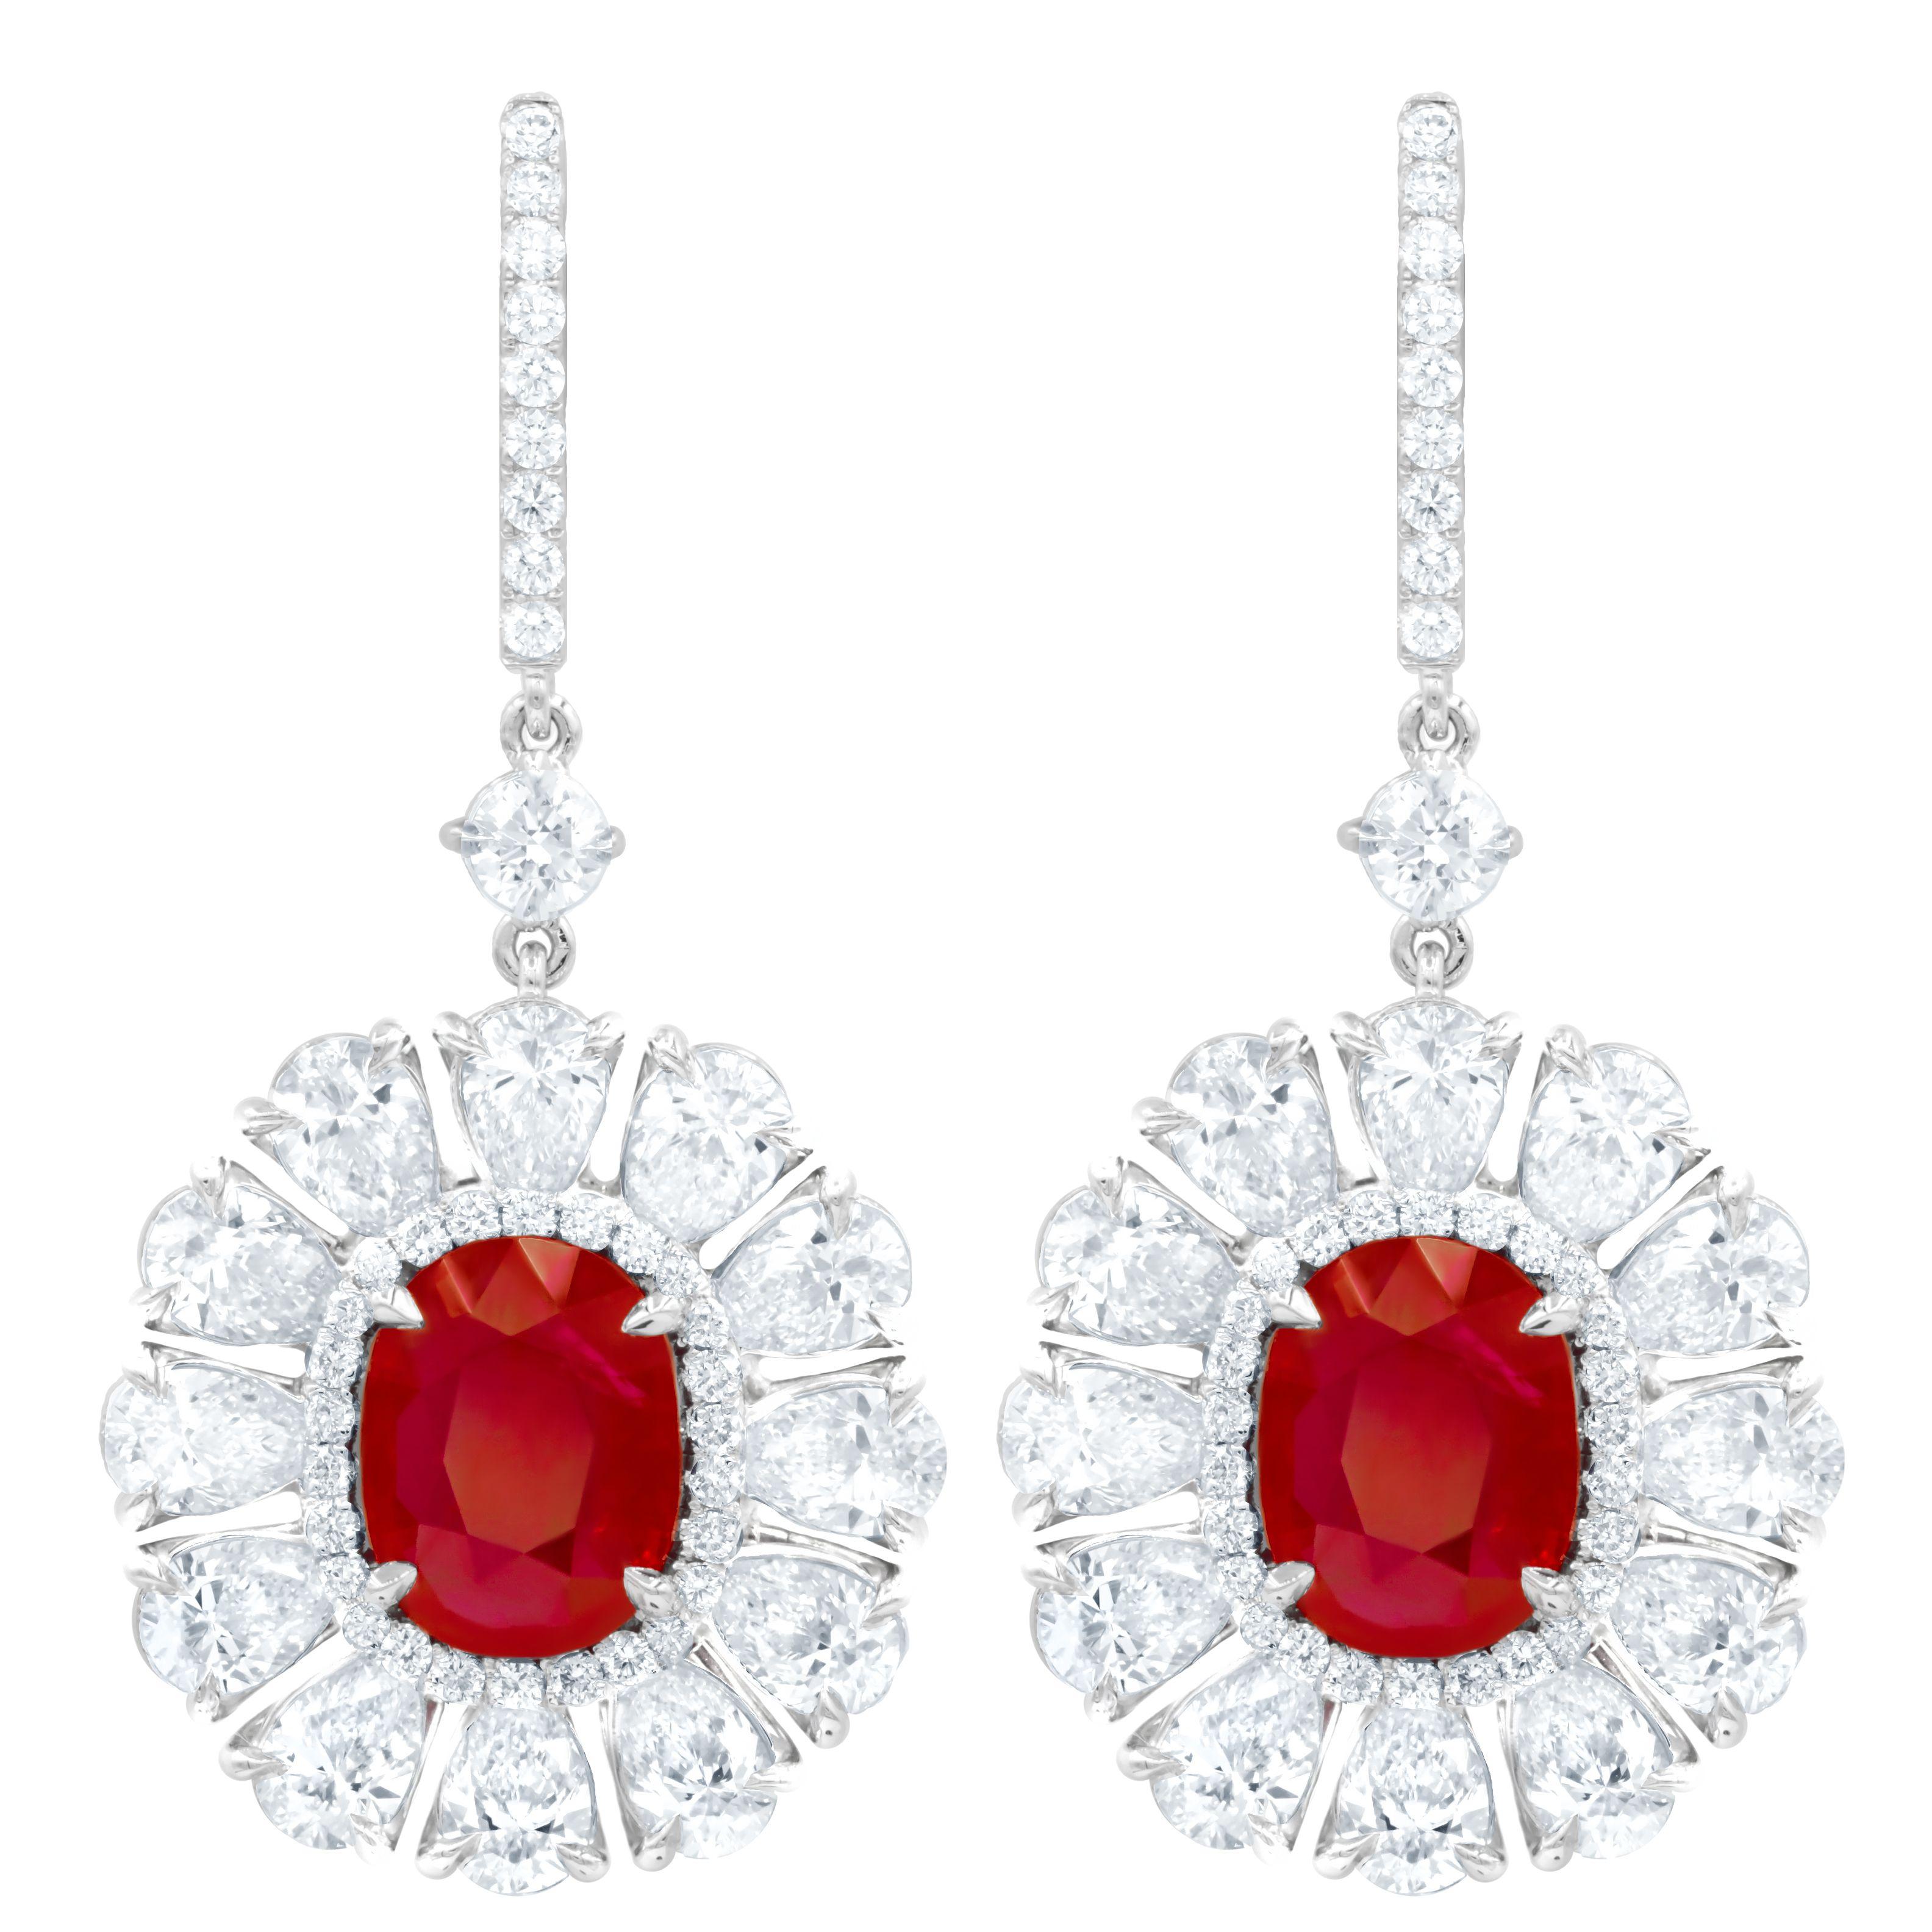 Oval Cut Diana M. 6.69 Carat Ruby Set in Diamond Halo Flower Shaped Earrings For Sale